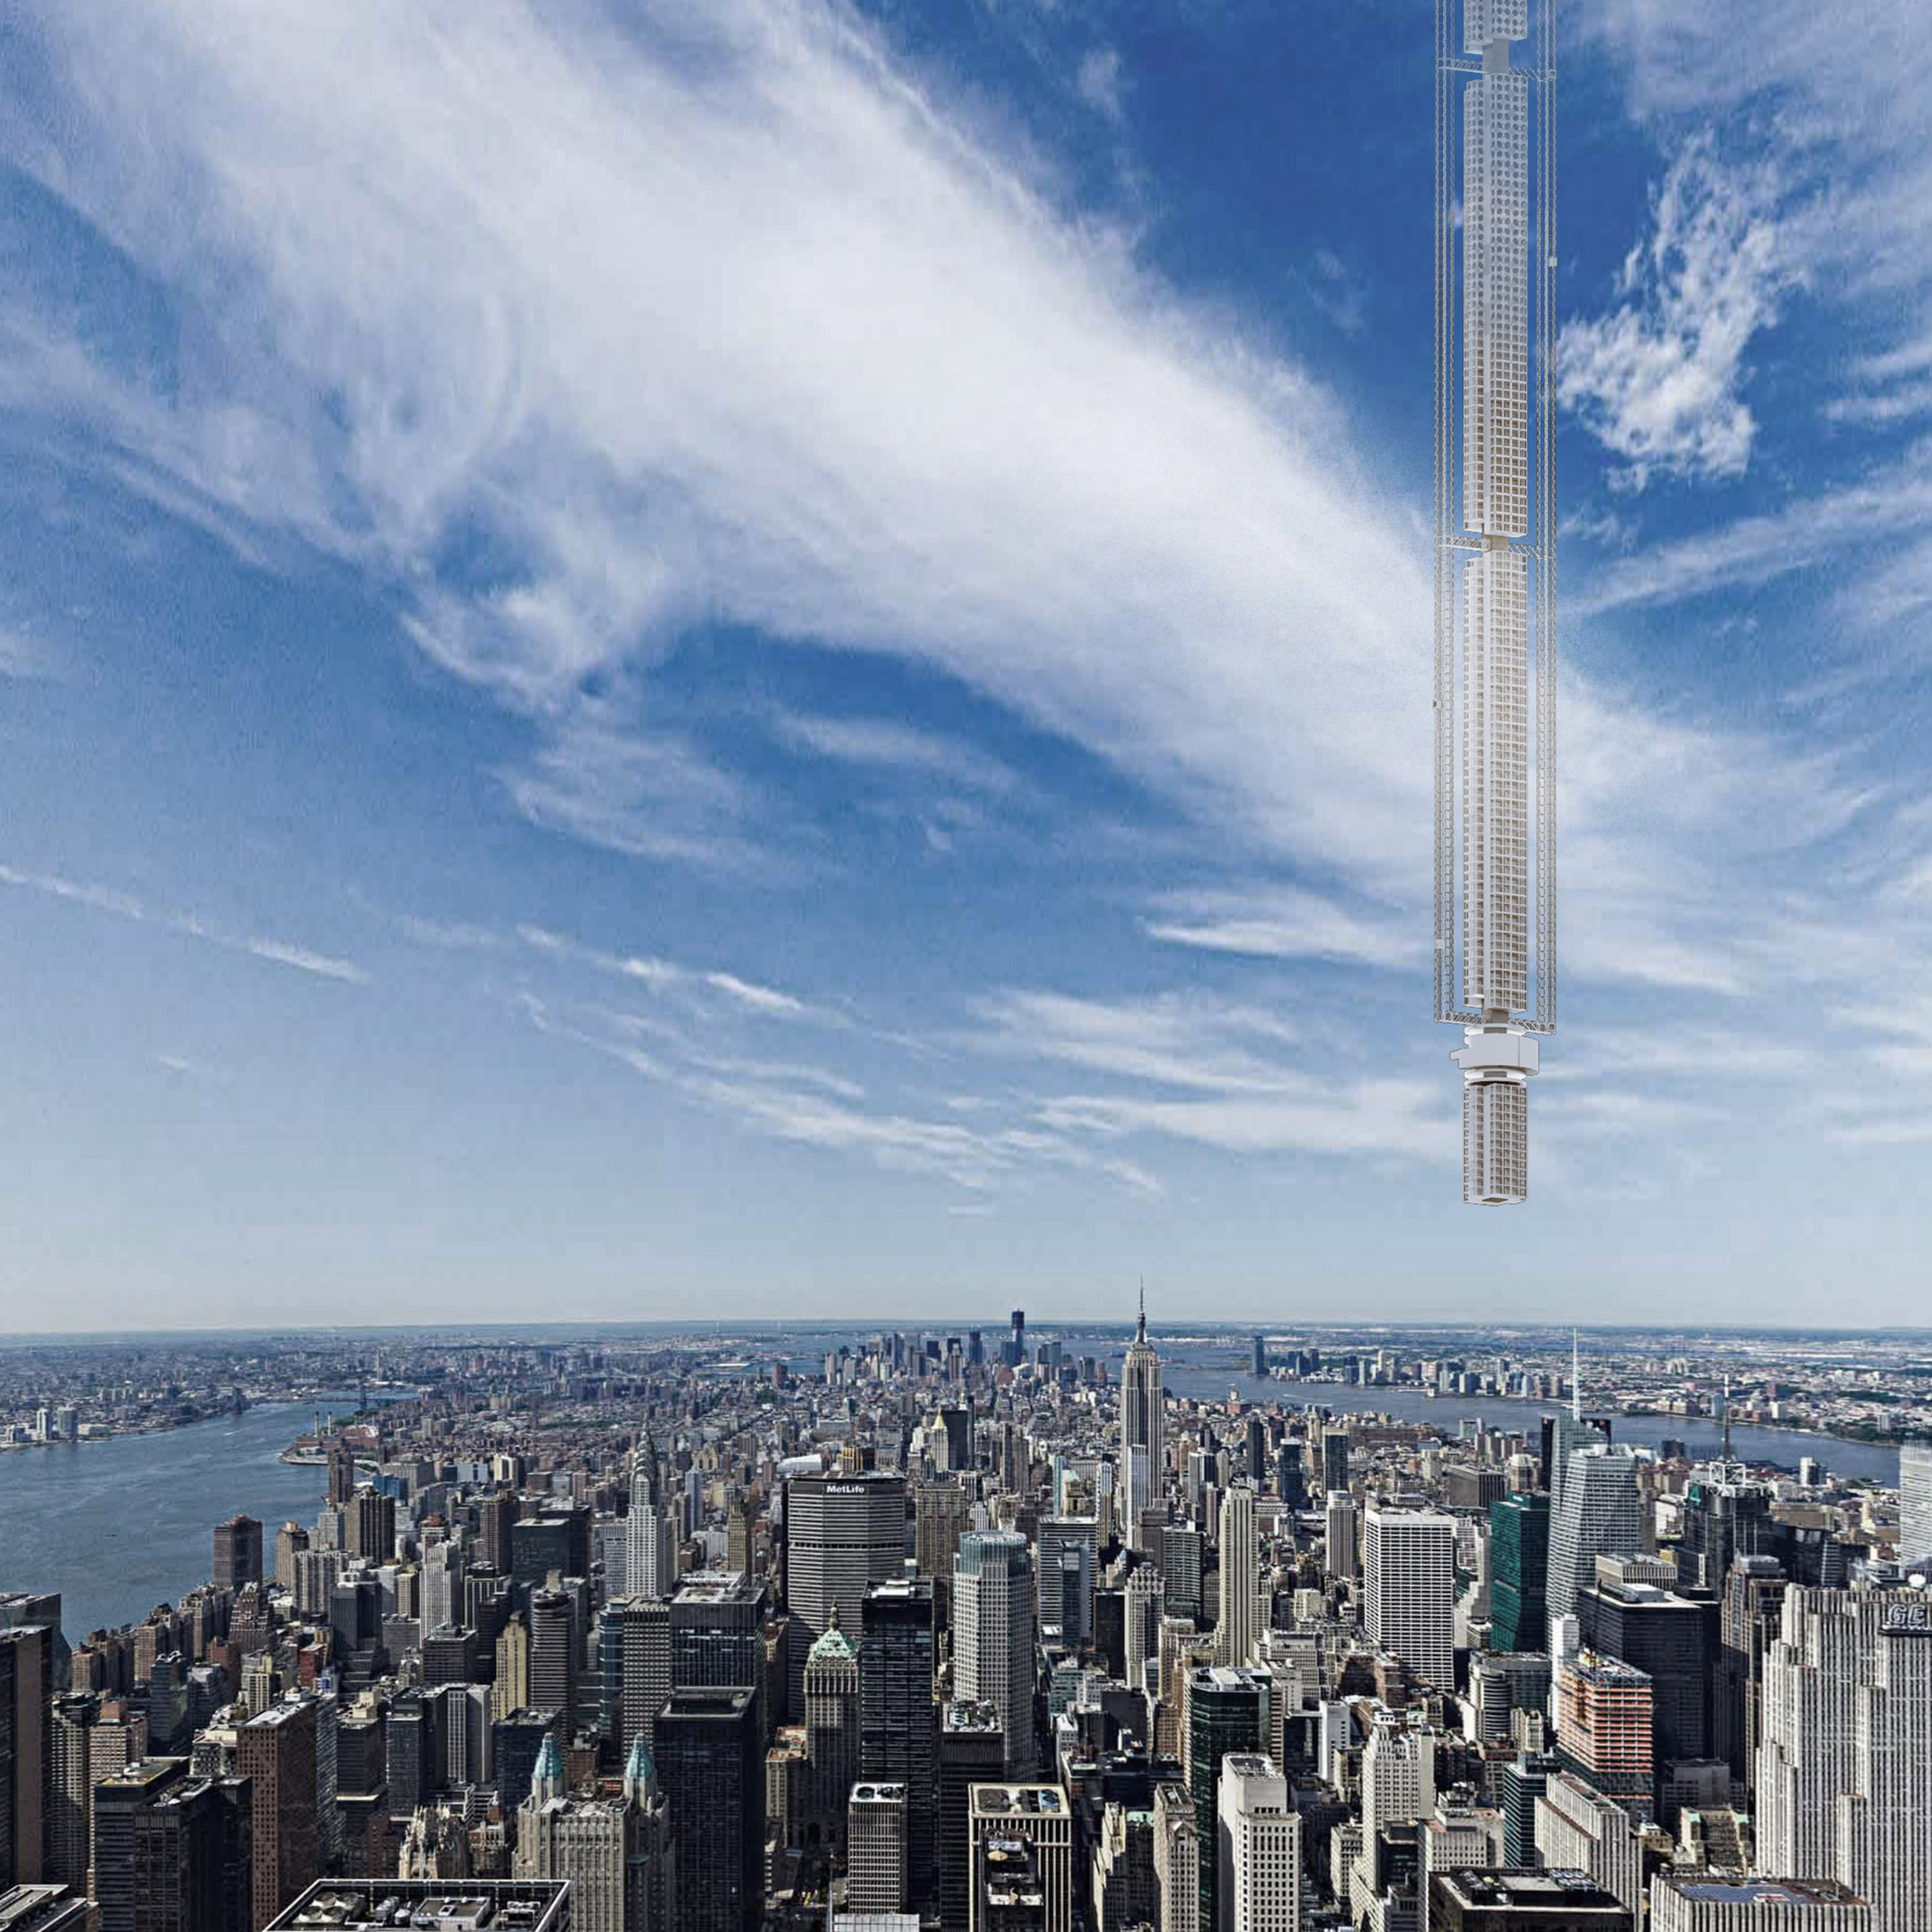 Clădirea viitorului pluteşte în aer